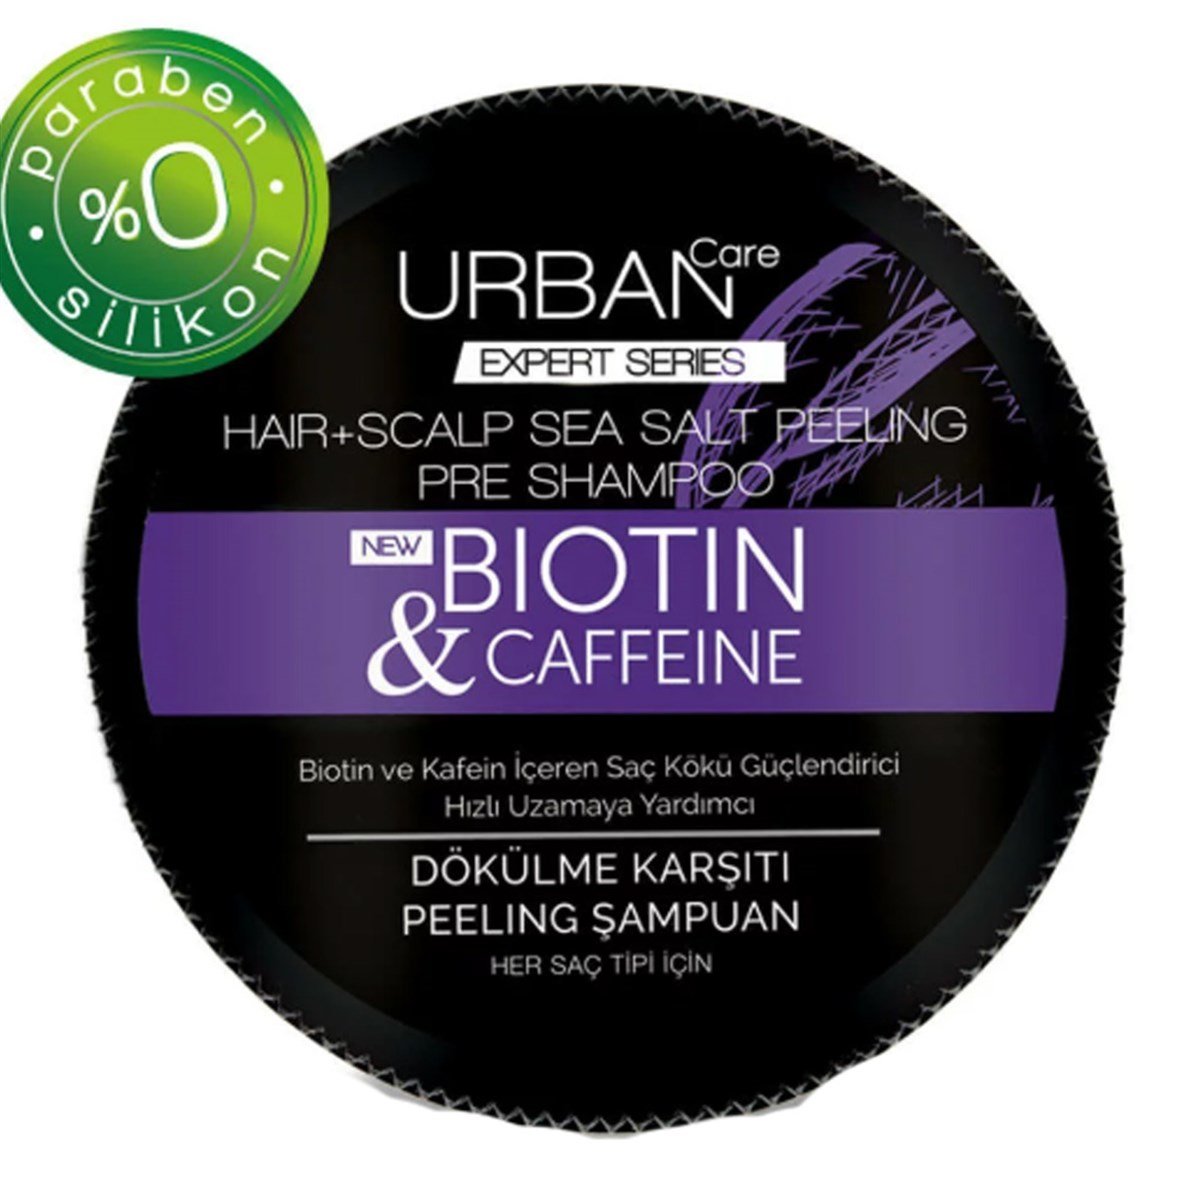 Urban Care Şampuan Biotin & Kafein Dökülme Karşıtı Peeling 200 ml - Platin